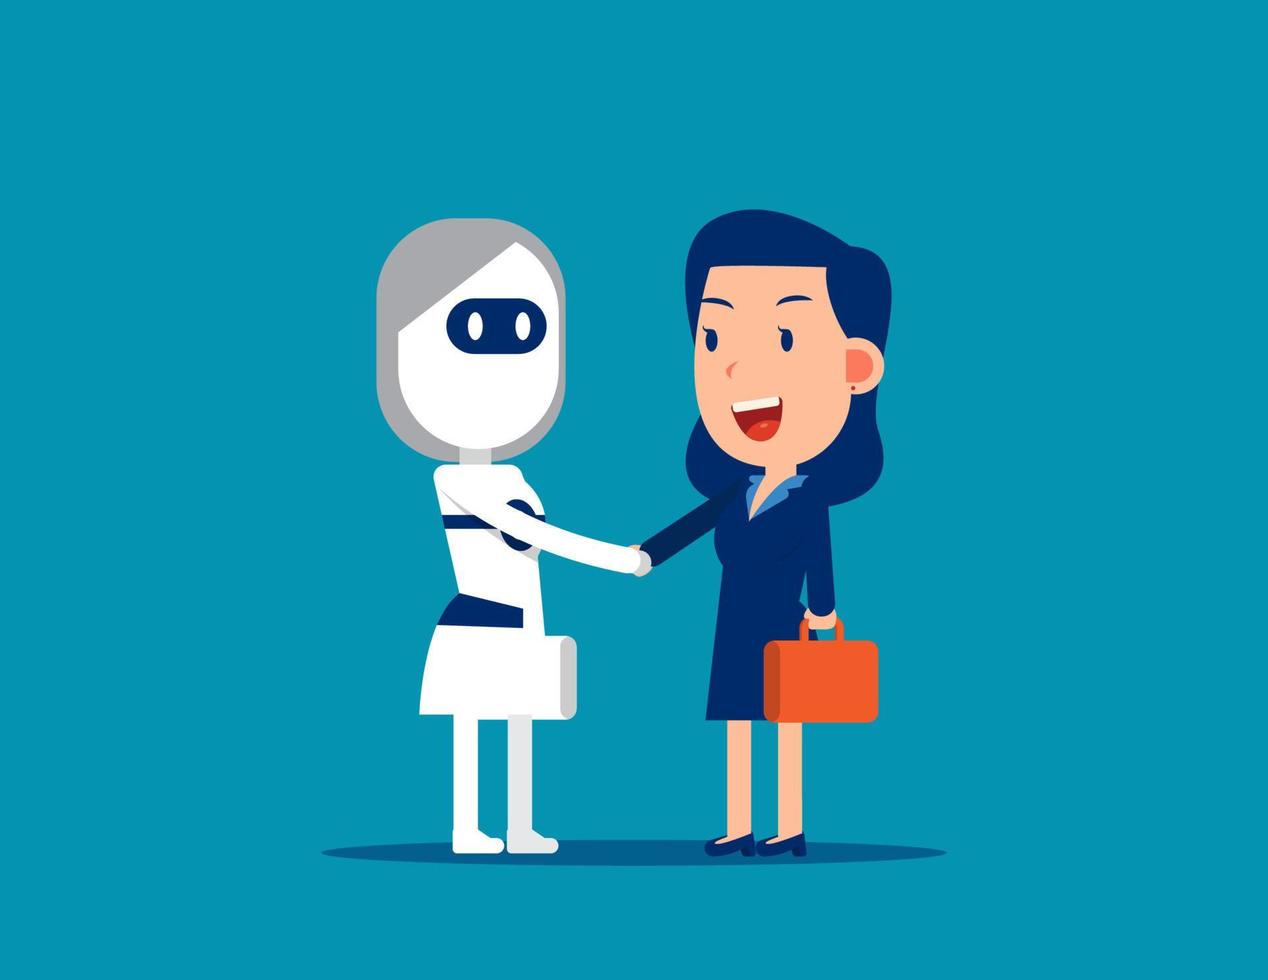 umano e robot stretta di mano. attività commerciale relazione concetto, artificiale intelligenza vettore